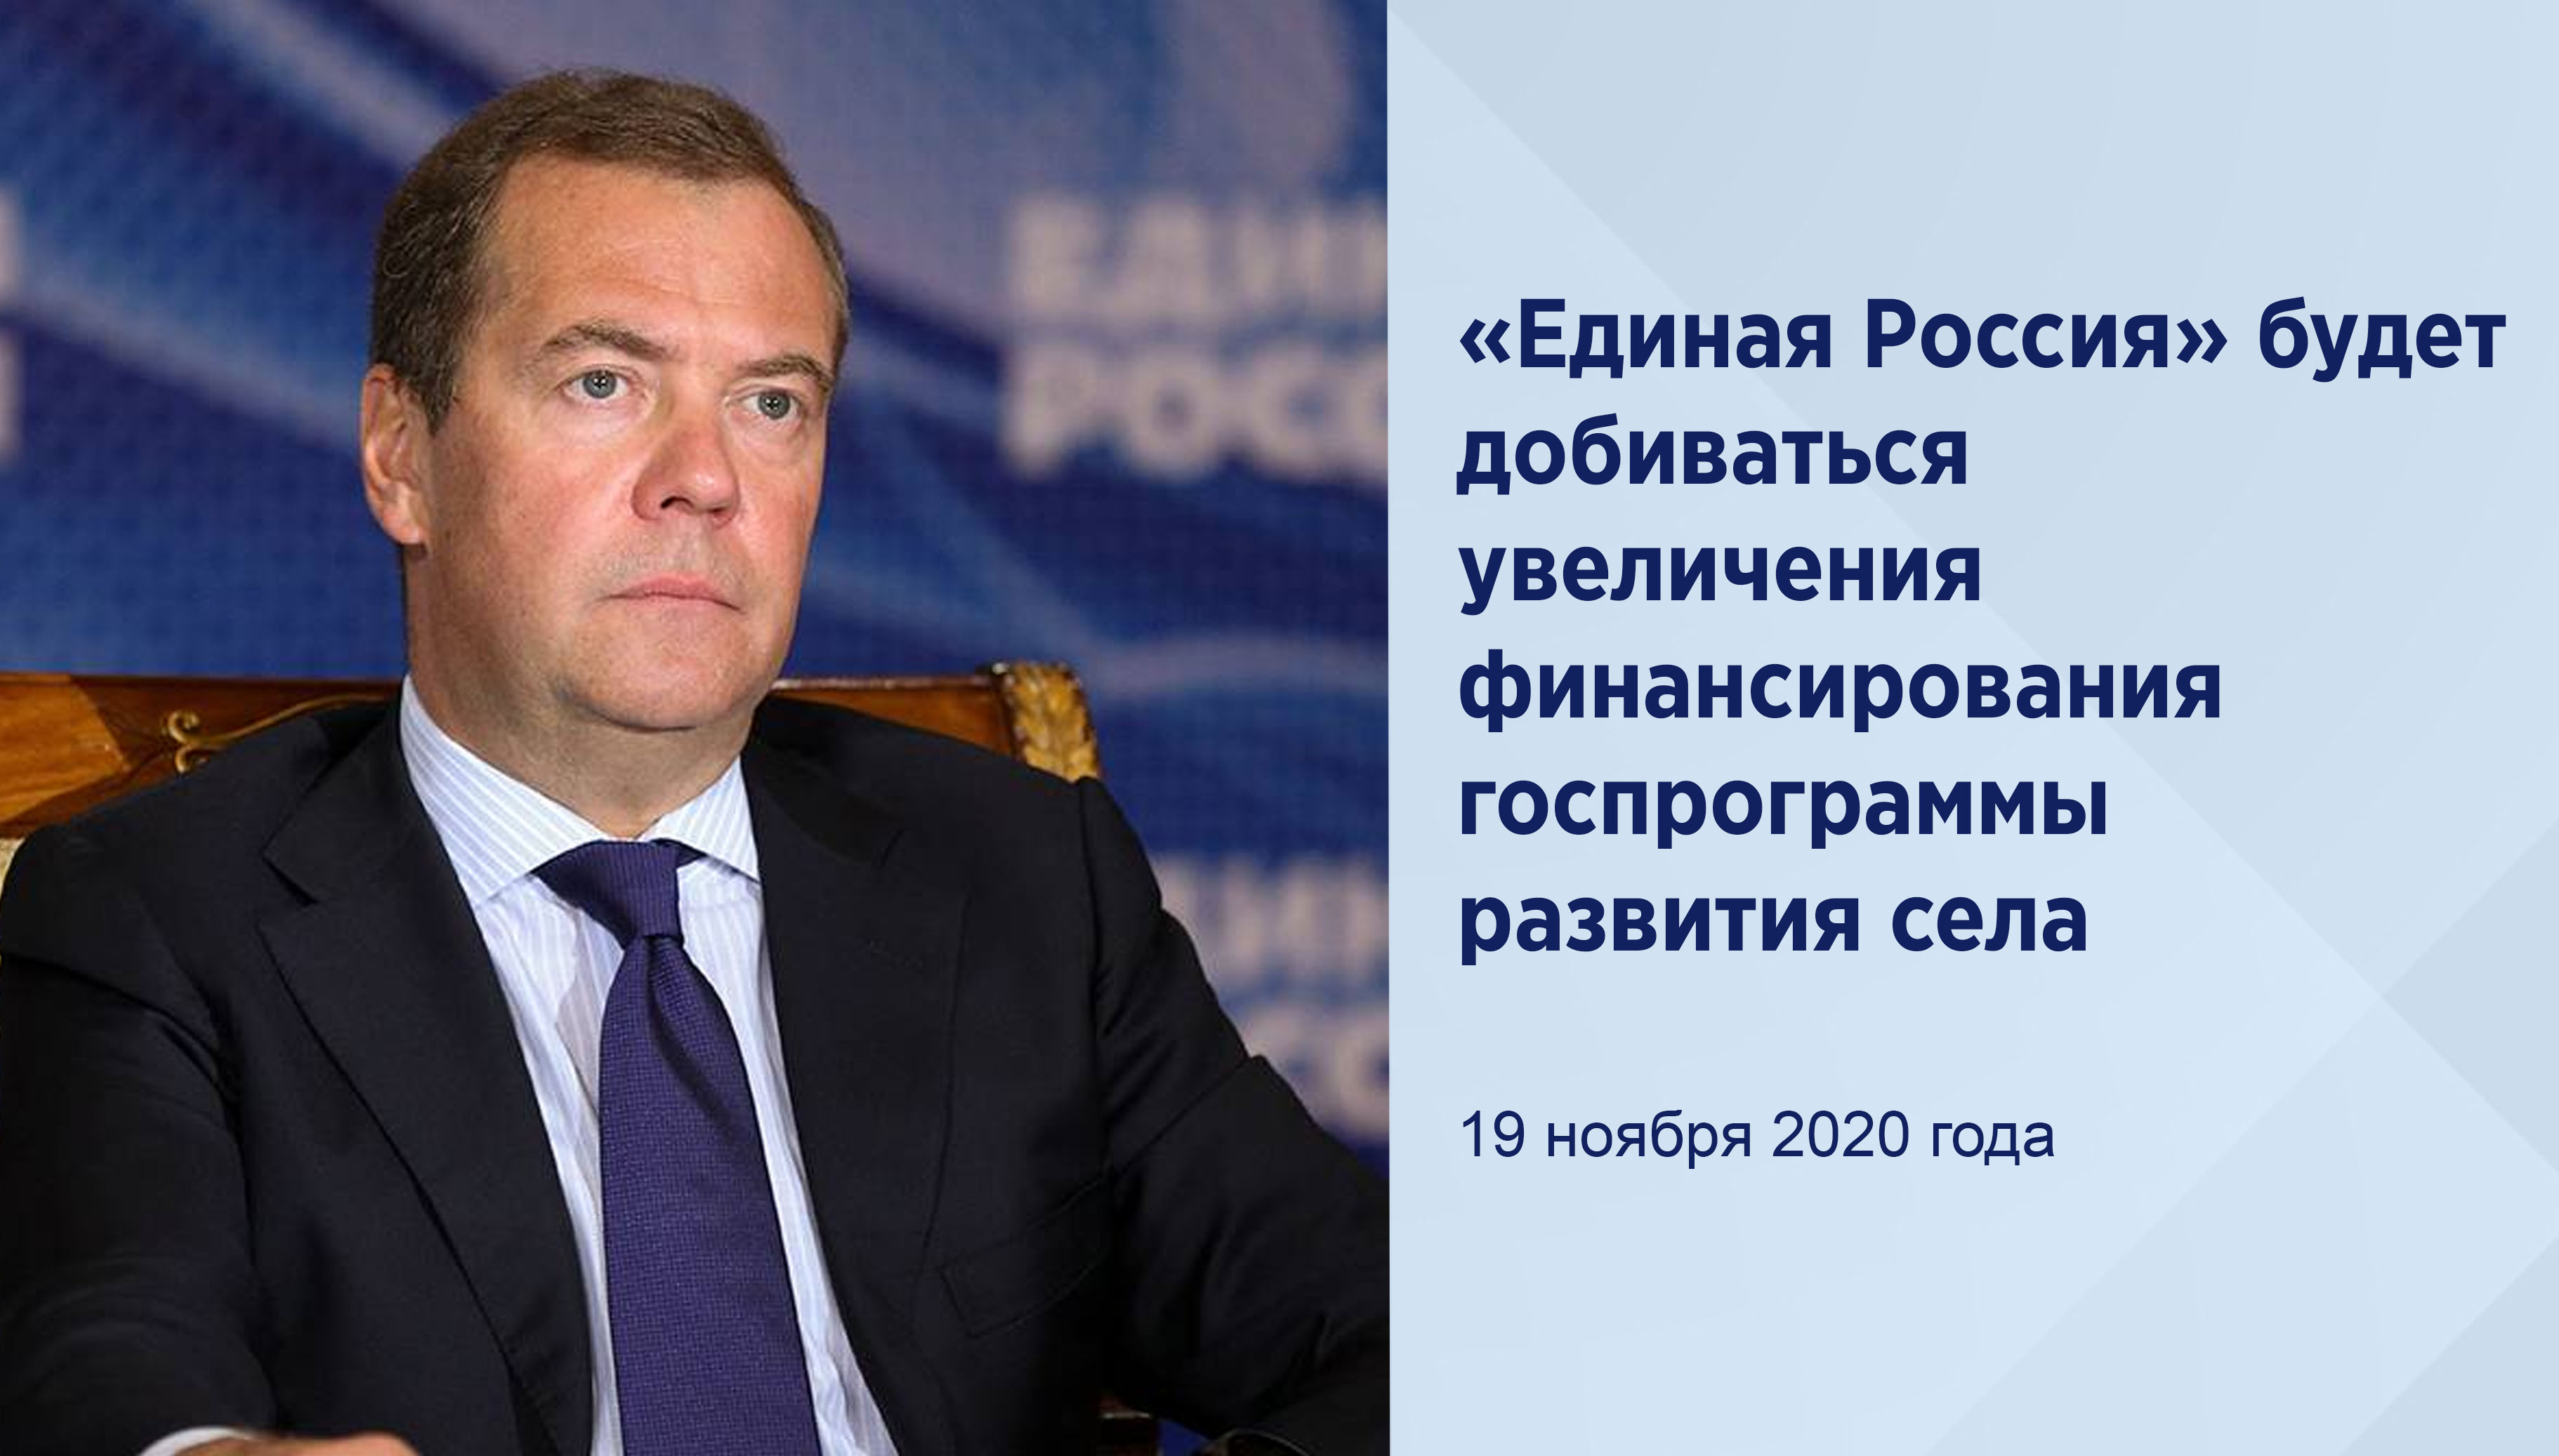 «Единая Россия» будет
добиваться увеличения финансирования
госпрограммы развития села